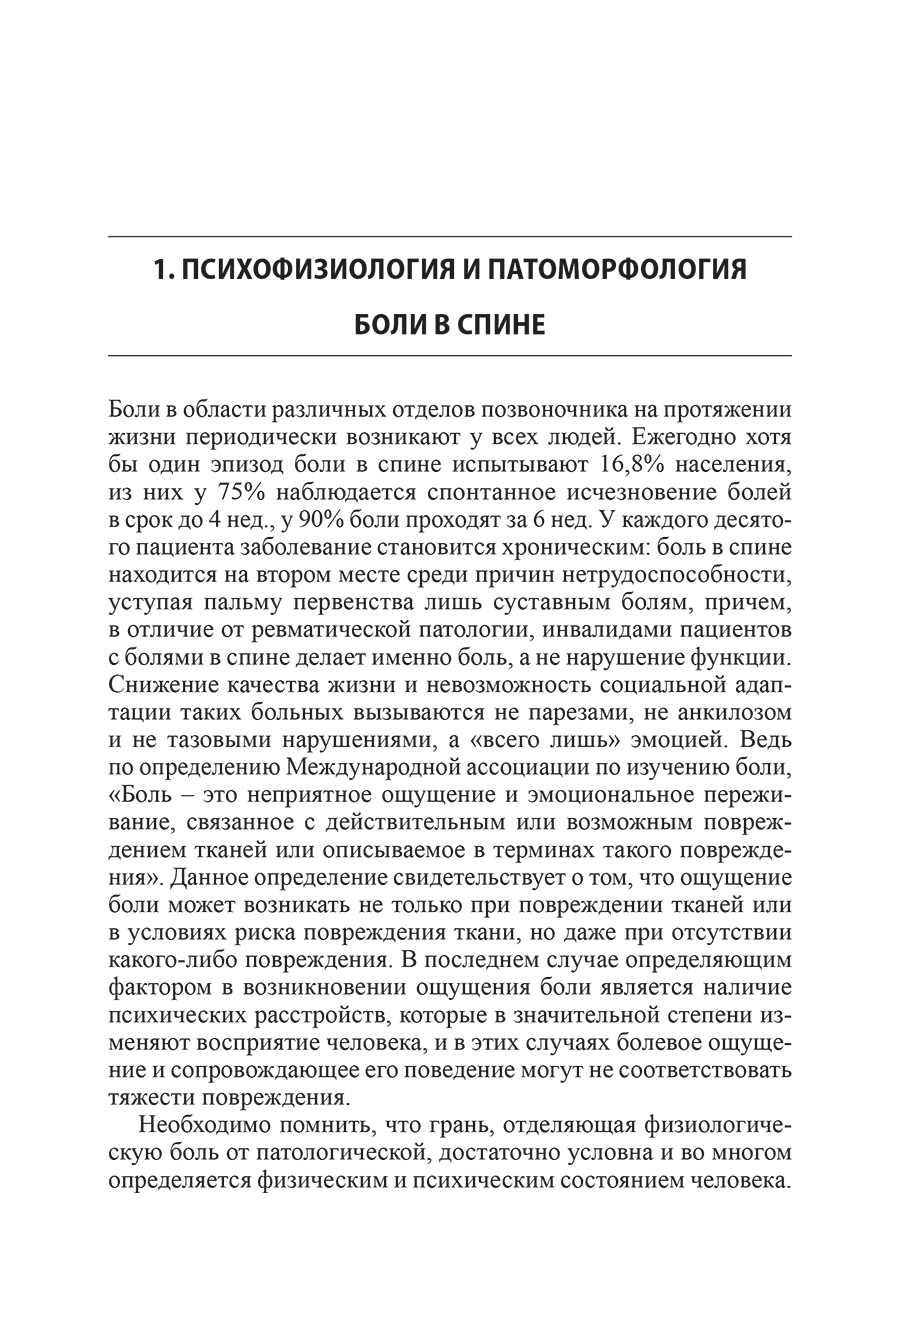 Пример страницы из книги "Боль в спине" - В. А. Епифанов